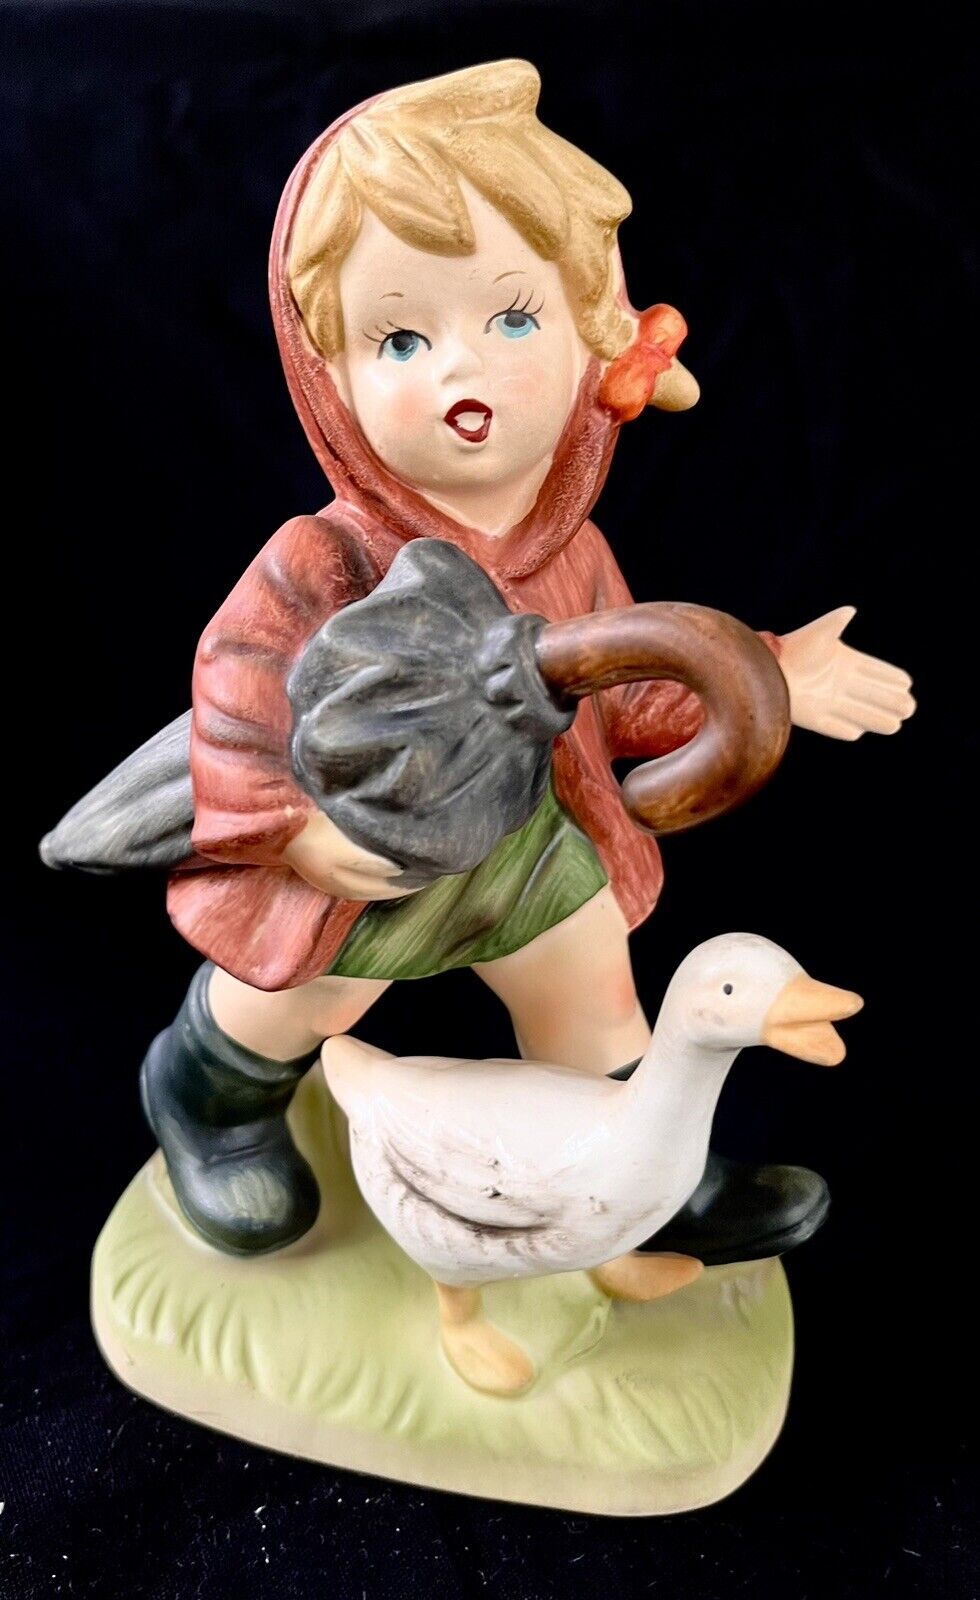 Napcoware Porcelain Our Children “ April Showers” Figurine 537 Japan